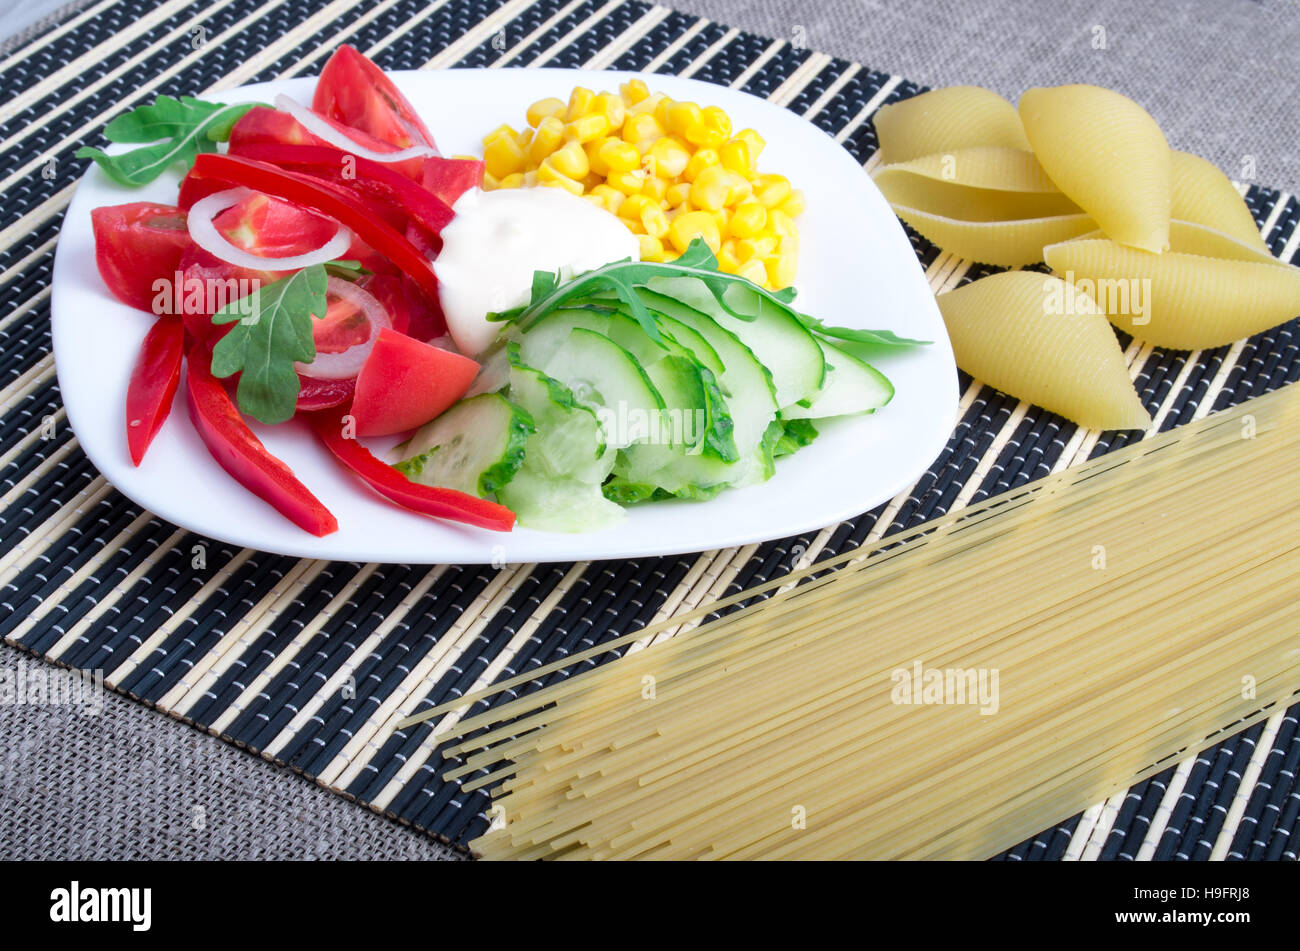 Vue rapprochée d'un plat végétarien de légumes crus et près de la mozzarella et pâtes spaghetti italien sur un fond rayé Banque D'Images